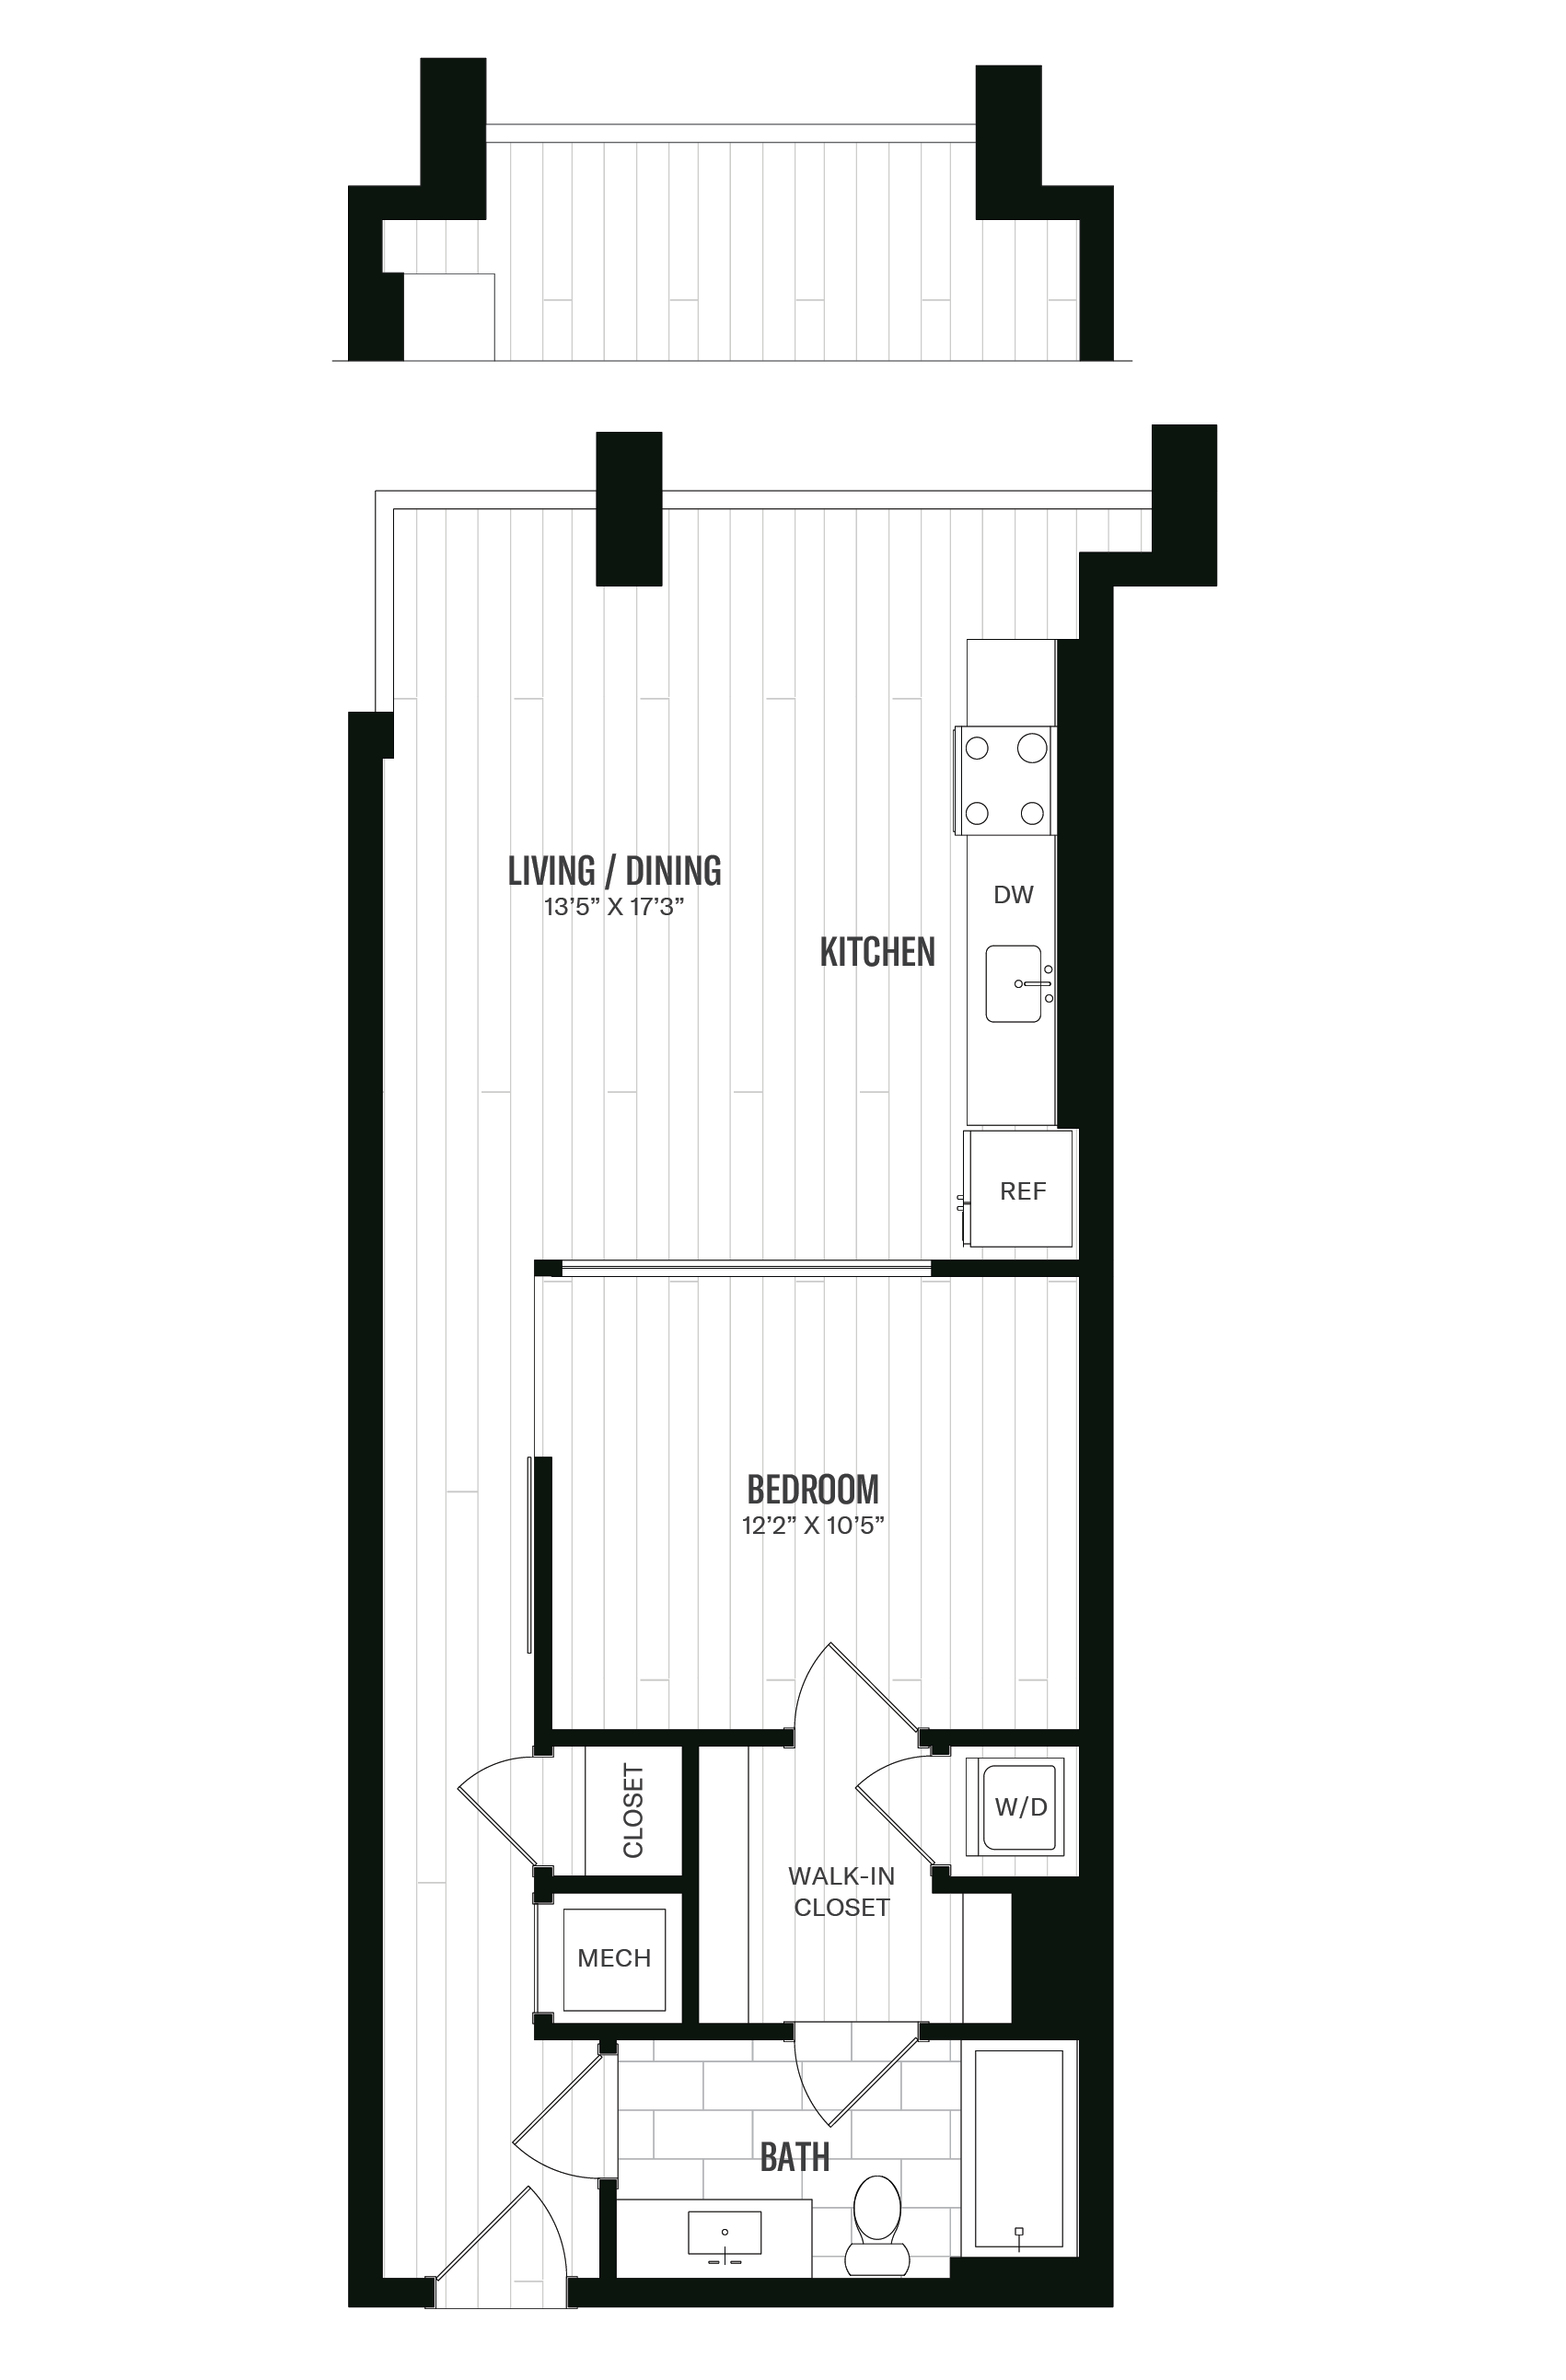 Floorplan image of unit 228